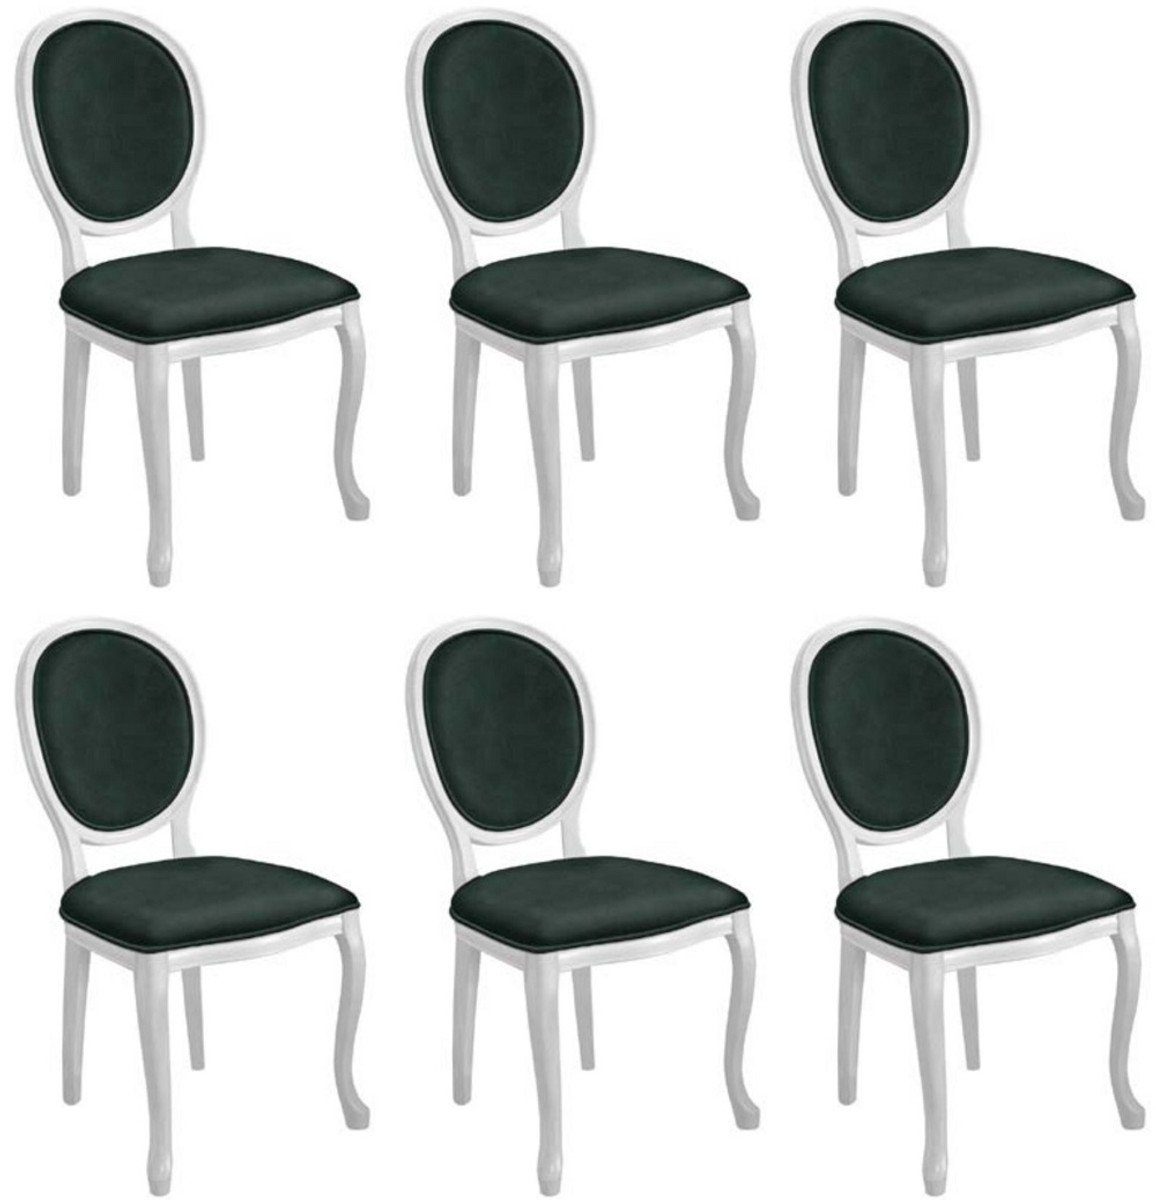 Casa Padrino Esszimmerstuhl Barock Esszimmerstuhl Set Grün / Weiß - 6 Handgefertigte Küchen Stühle im Barockstil - Barock Esszimmer Möbel